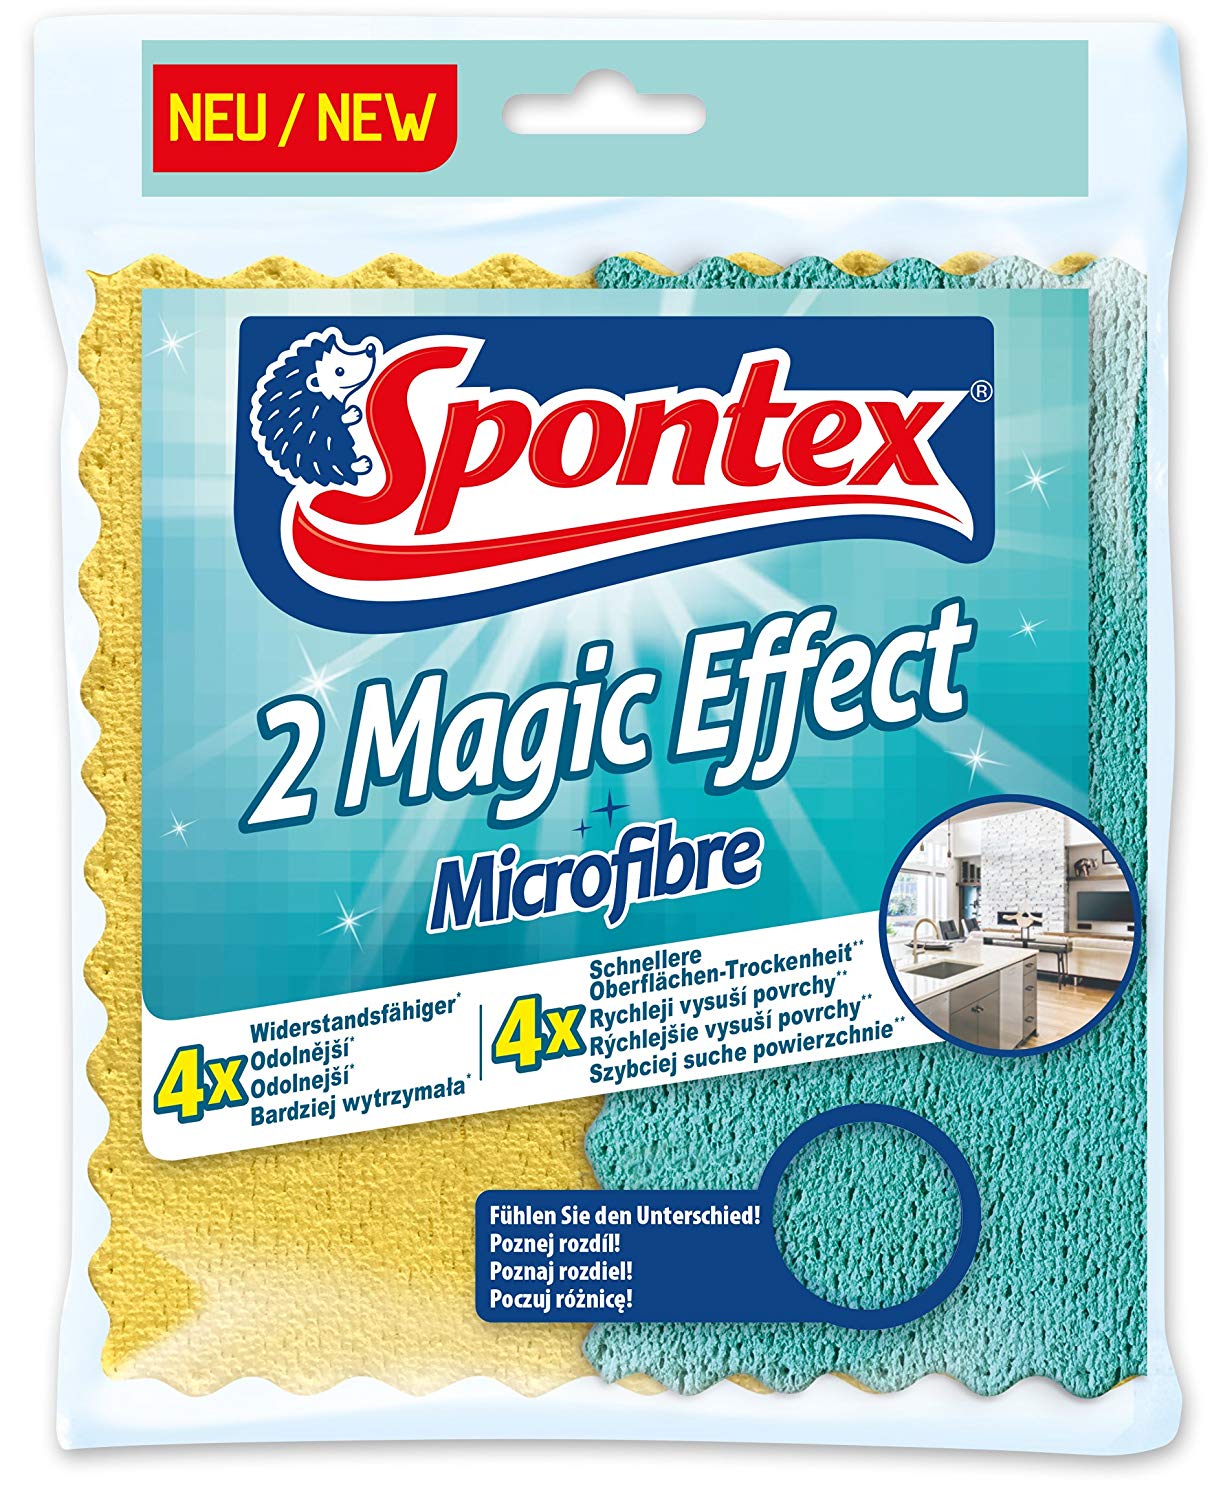 Spontex Magic Effect hadřík z mikrovlákna 2 ks